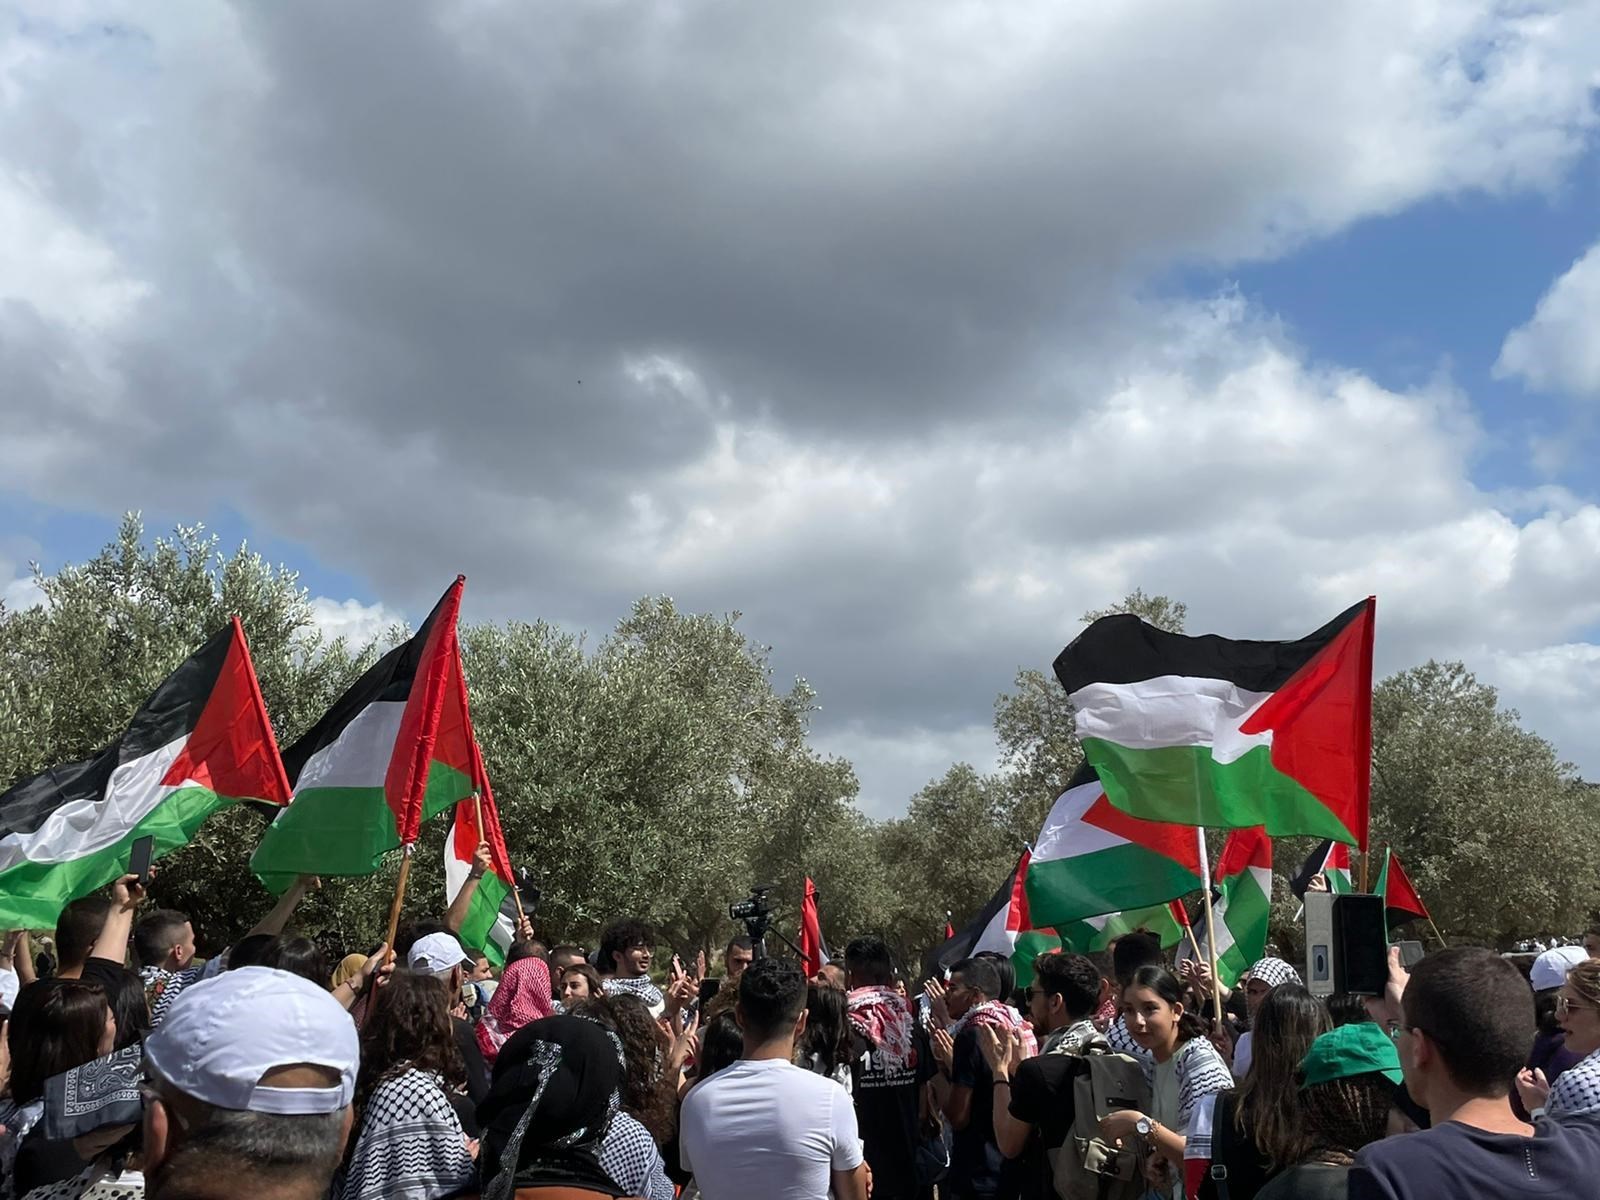 آلاف الفلسطينيين يشاركون في مسيرة العودة الـ25 لقرية معيار في الداخل المحتل